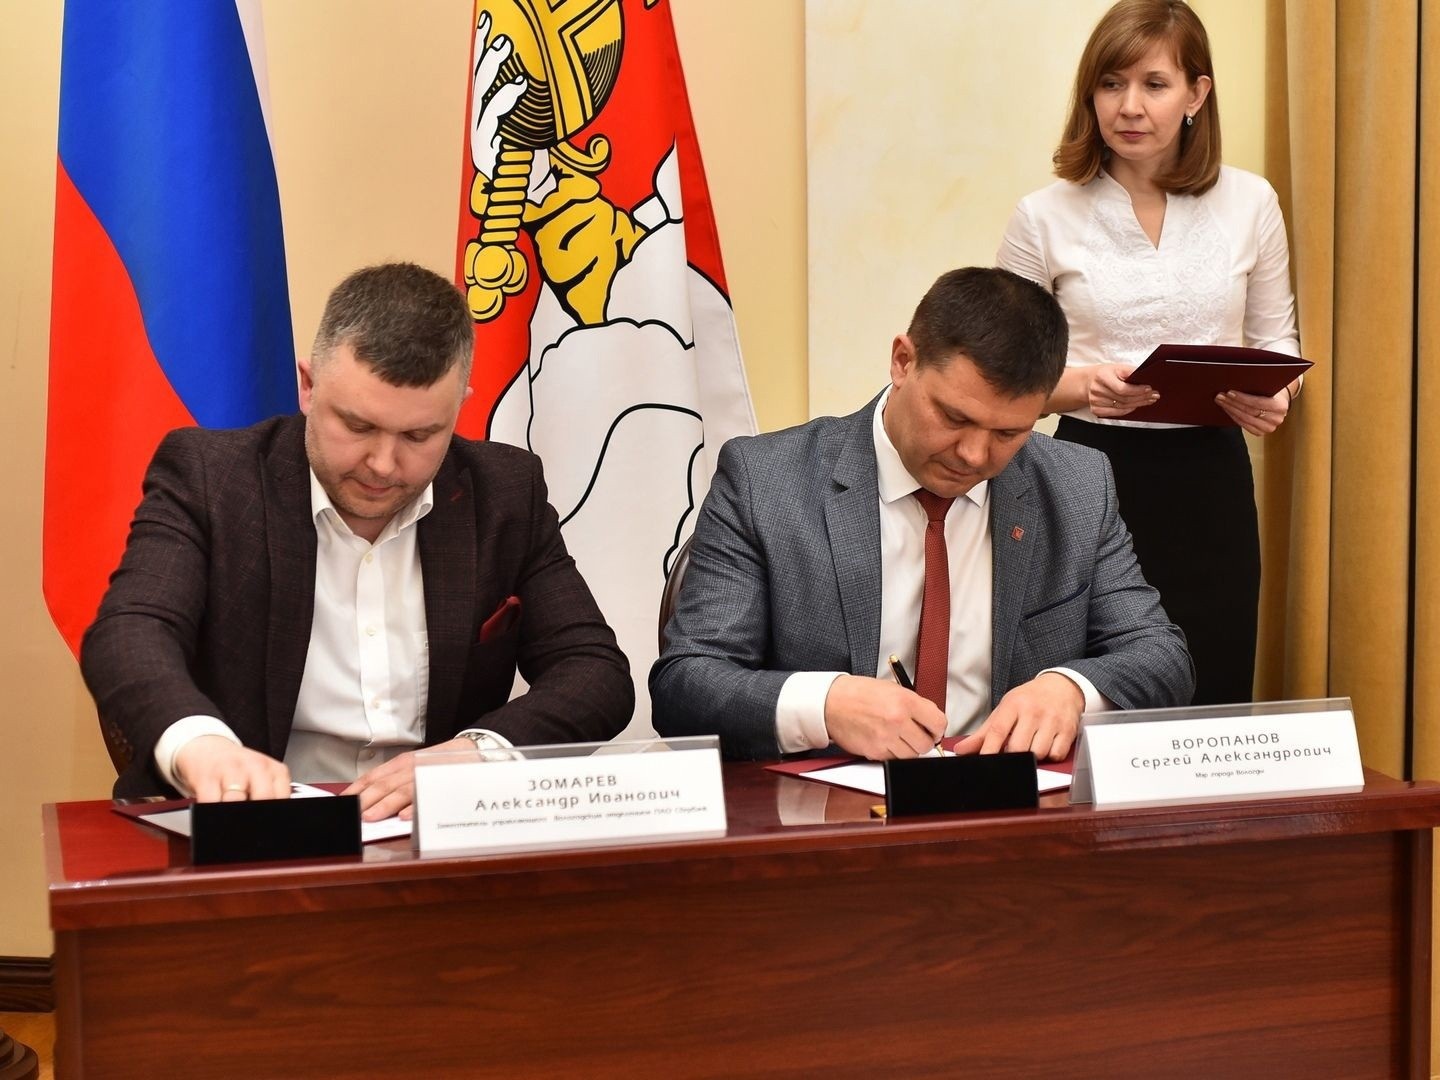 На съезде  «зеленых» предпринимателей в Вологде подписаны соглашения о сотрудничестве в сфере экологии и устойчивого развития.